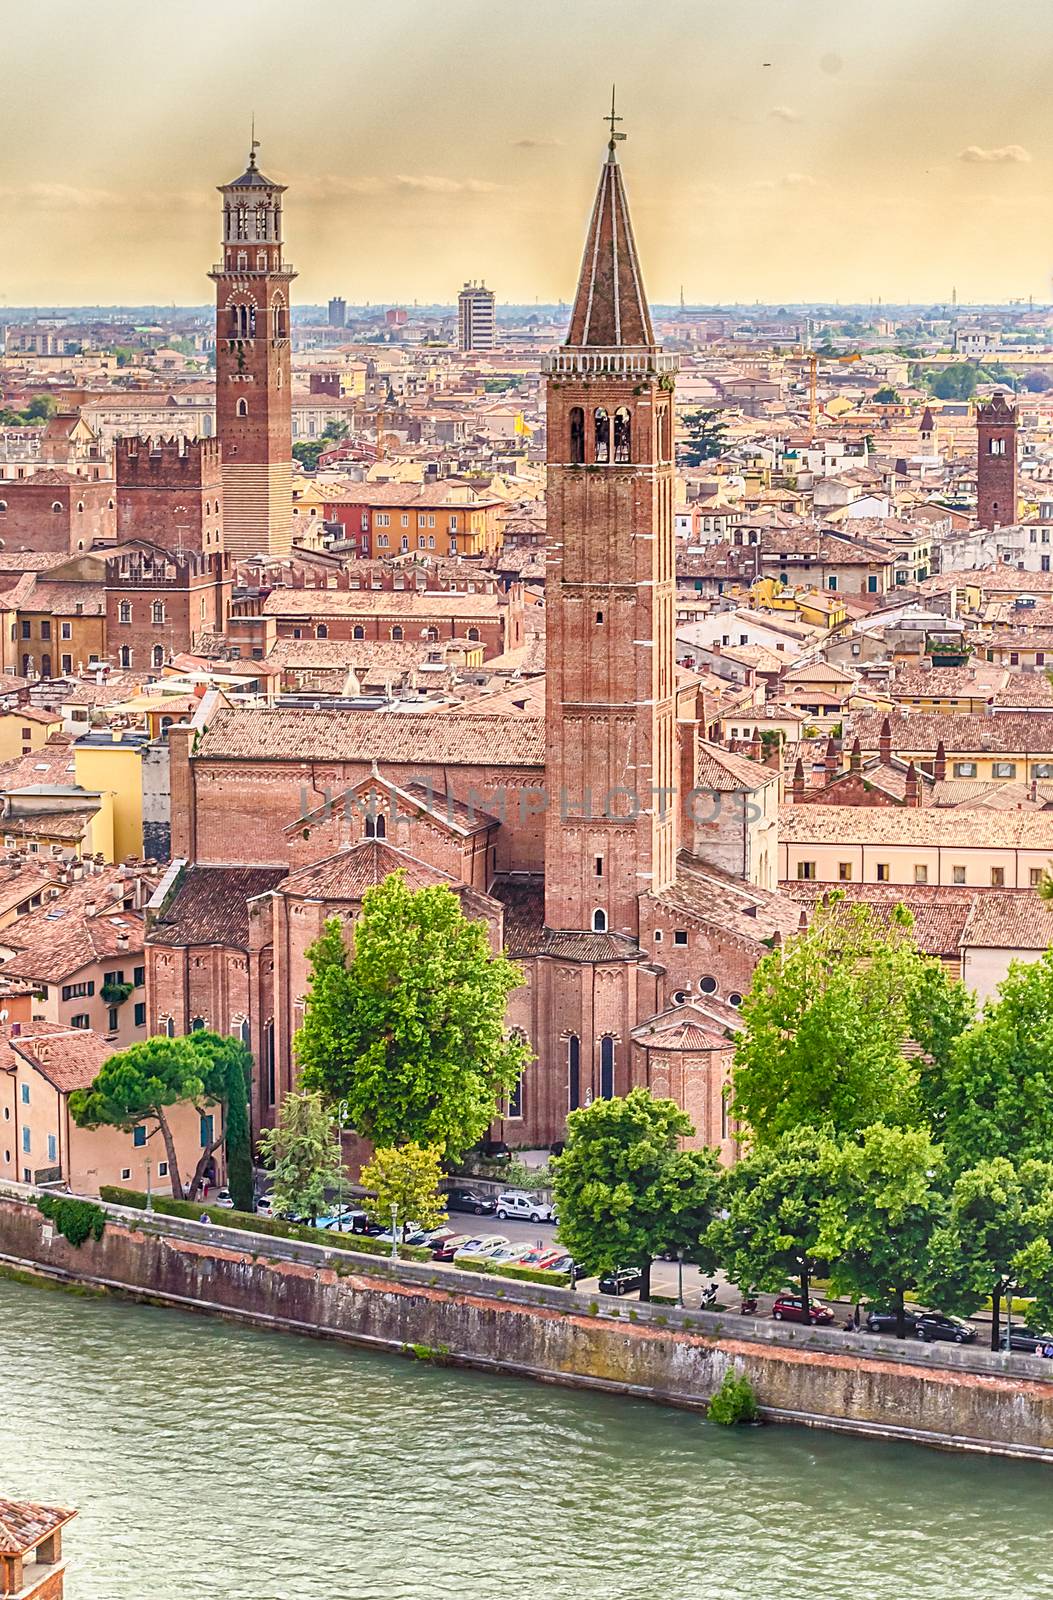 Sant' Anastasia Church and Lamberti Tower, aerial view over Adige River, Verona